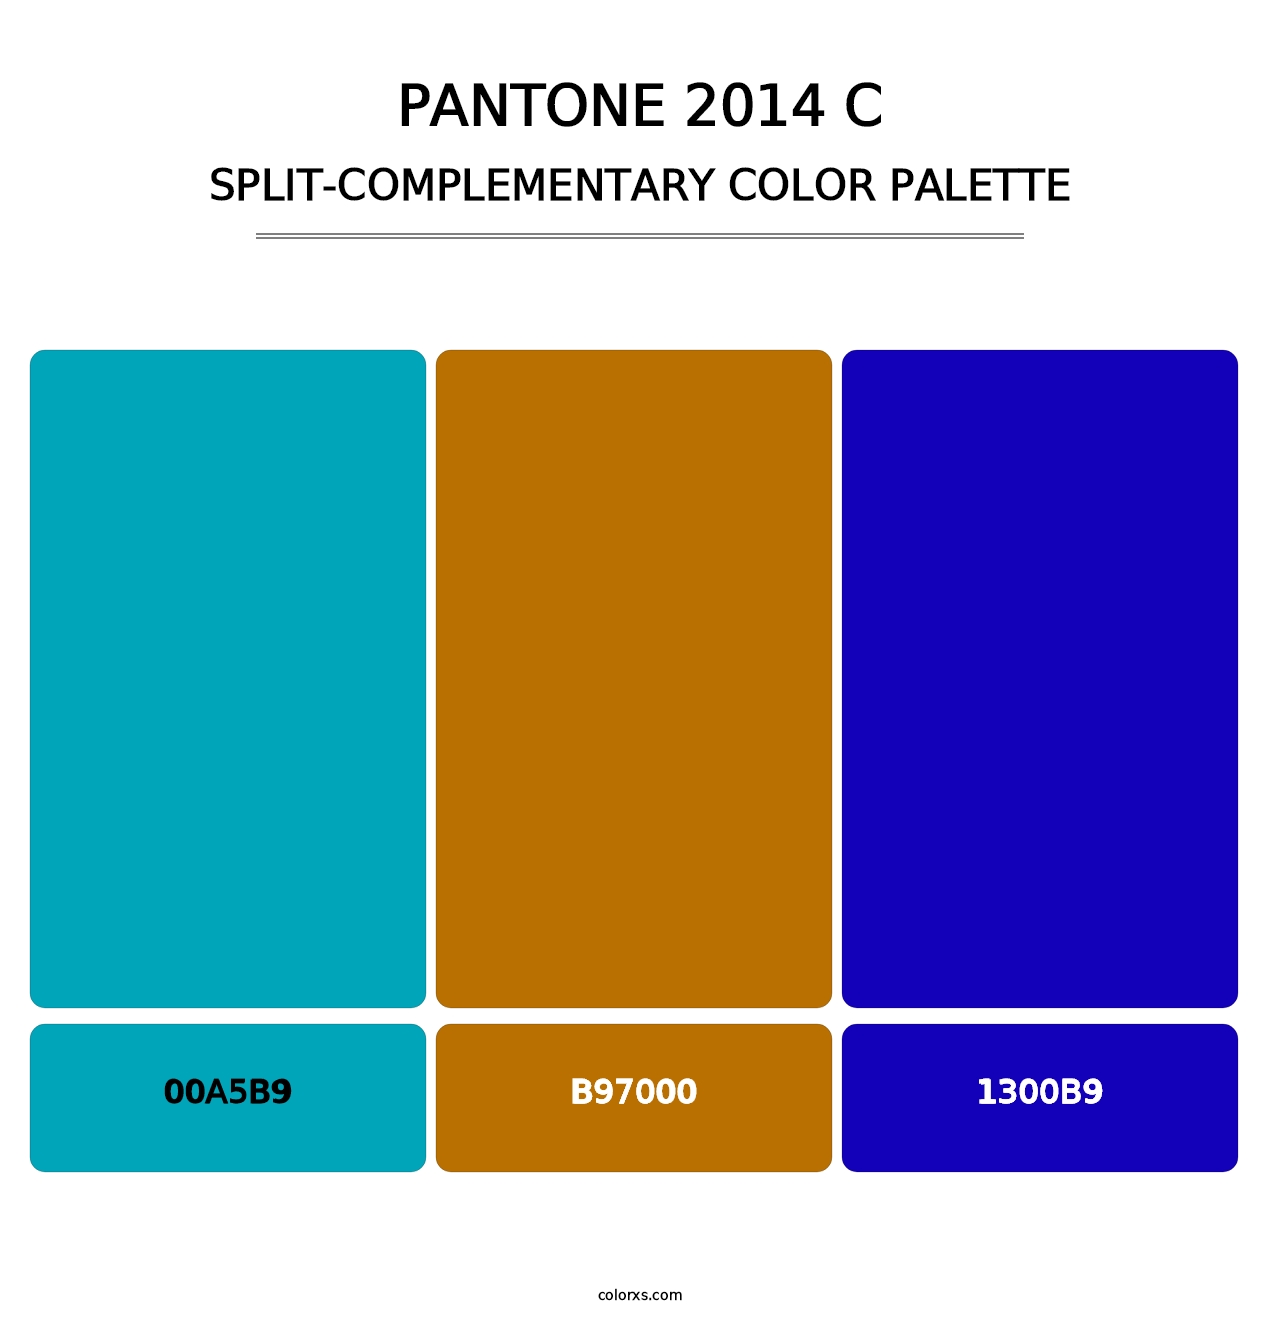 PANTONE 2014 C - Split-Complementary Color Palette